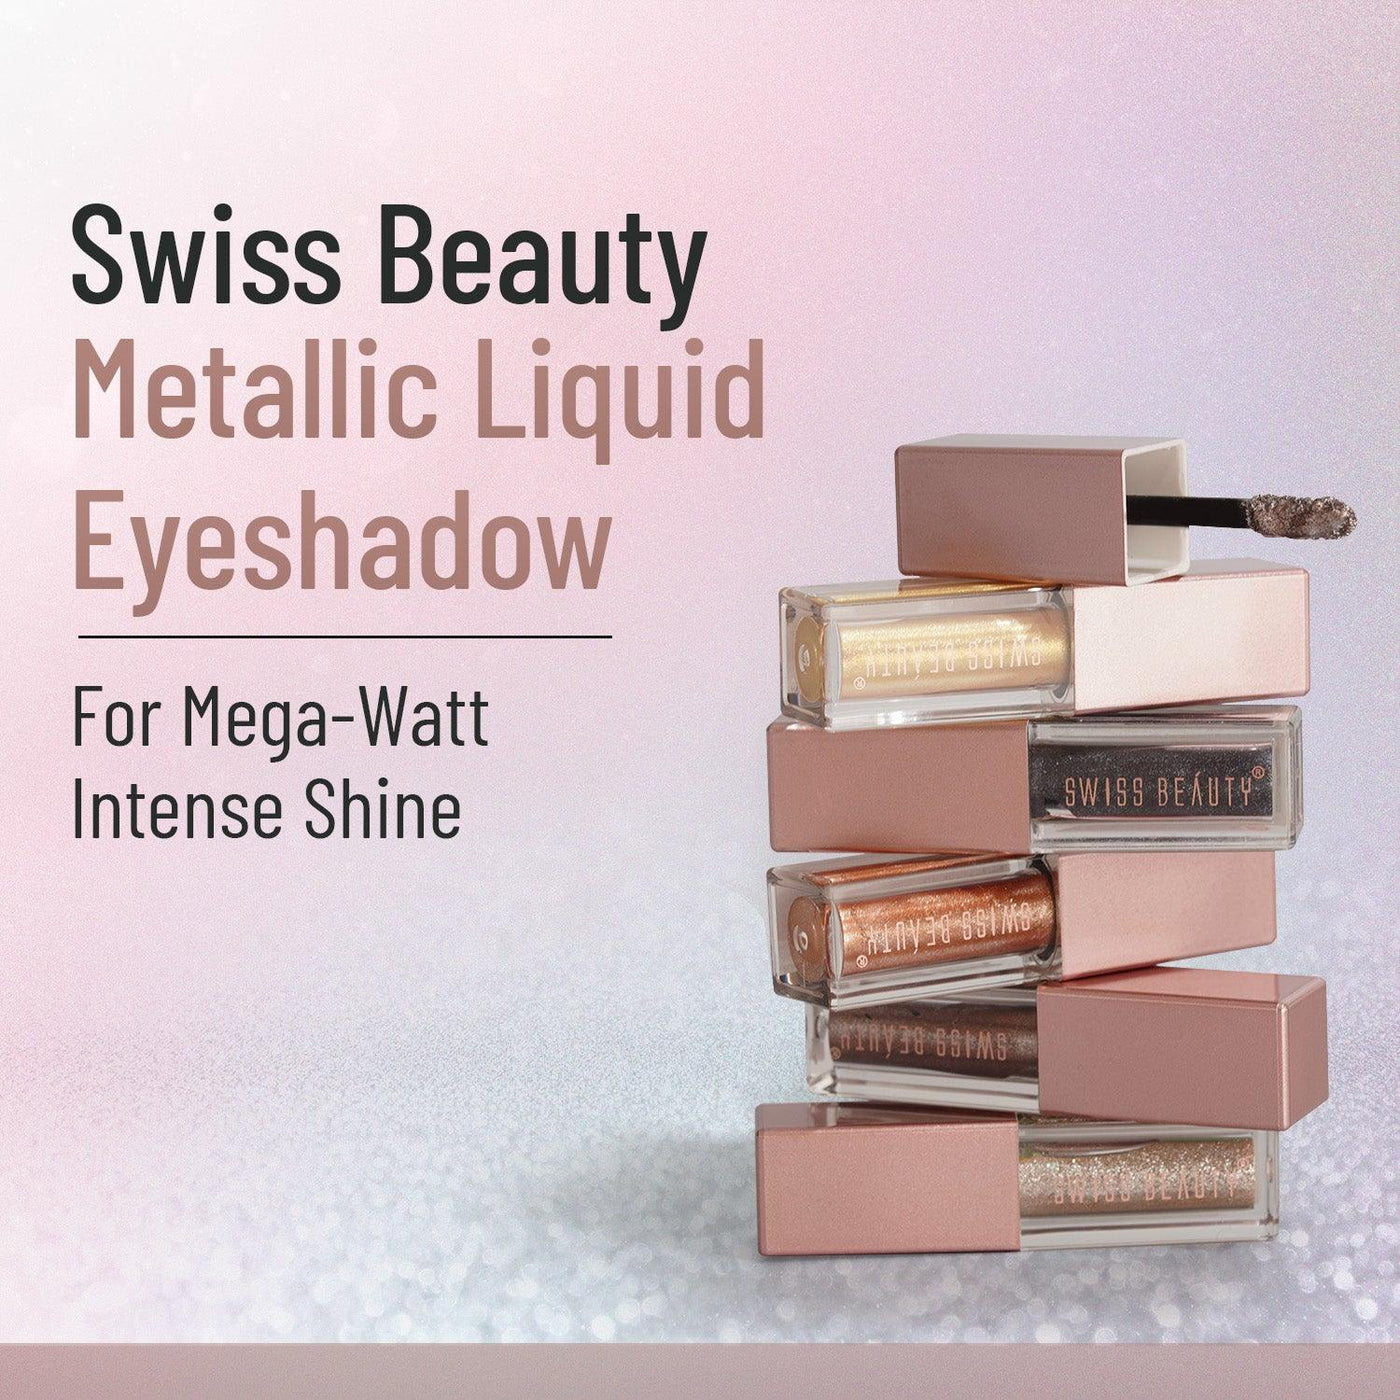 Metallic liquid eyeshadow Pack of Six - Swiss Beauty